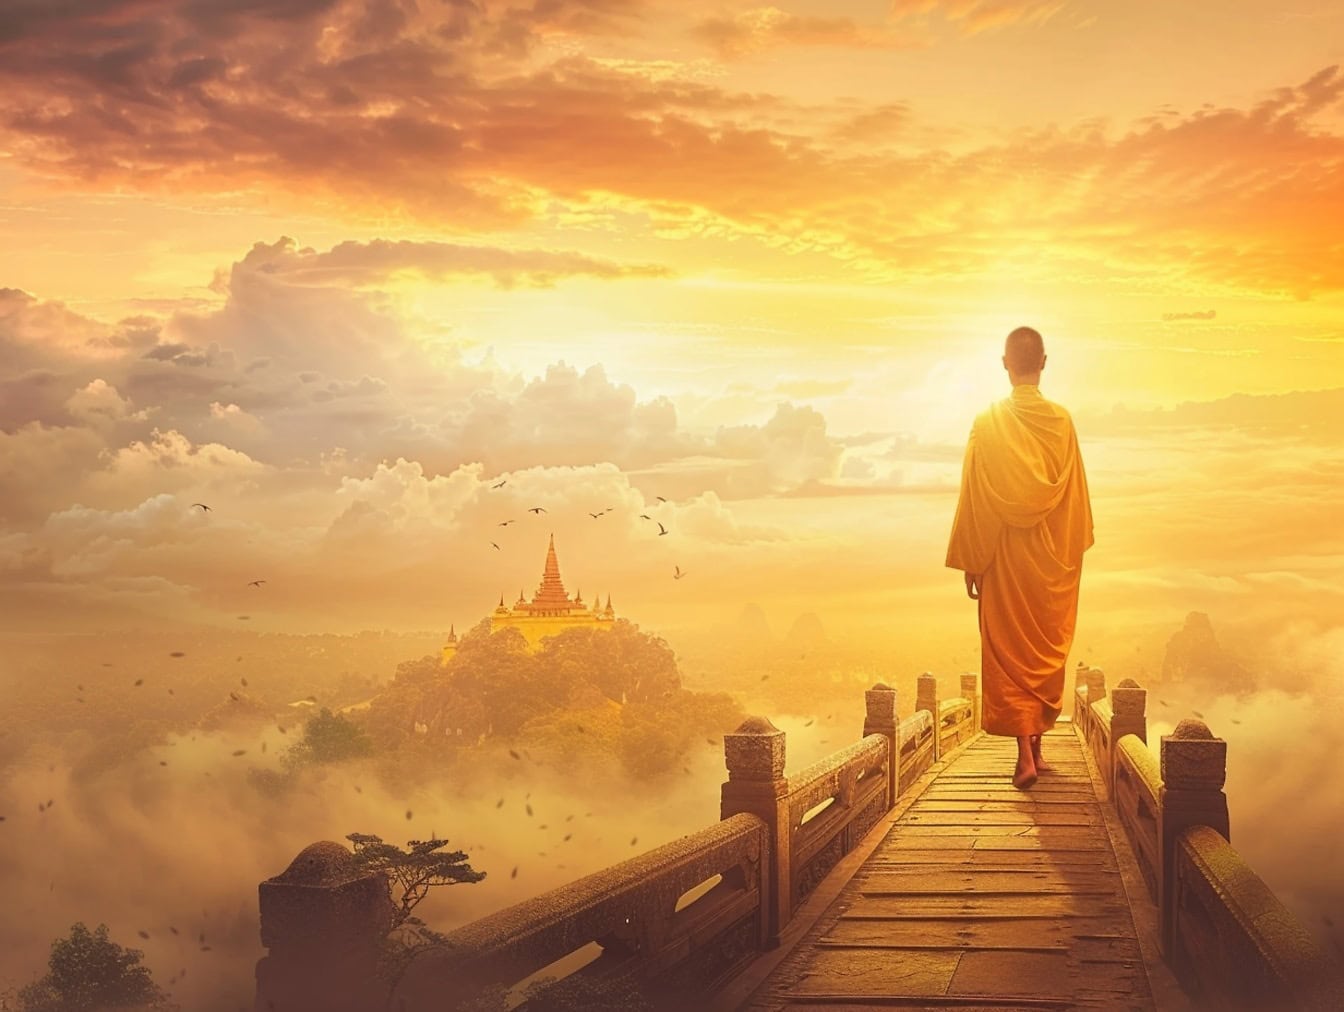 Буддийский монах Шаолинь, идущий по пешеходному мосту в облаках на закате, иллюстрация мира и спокойствия на дороге в рай